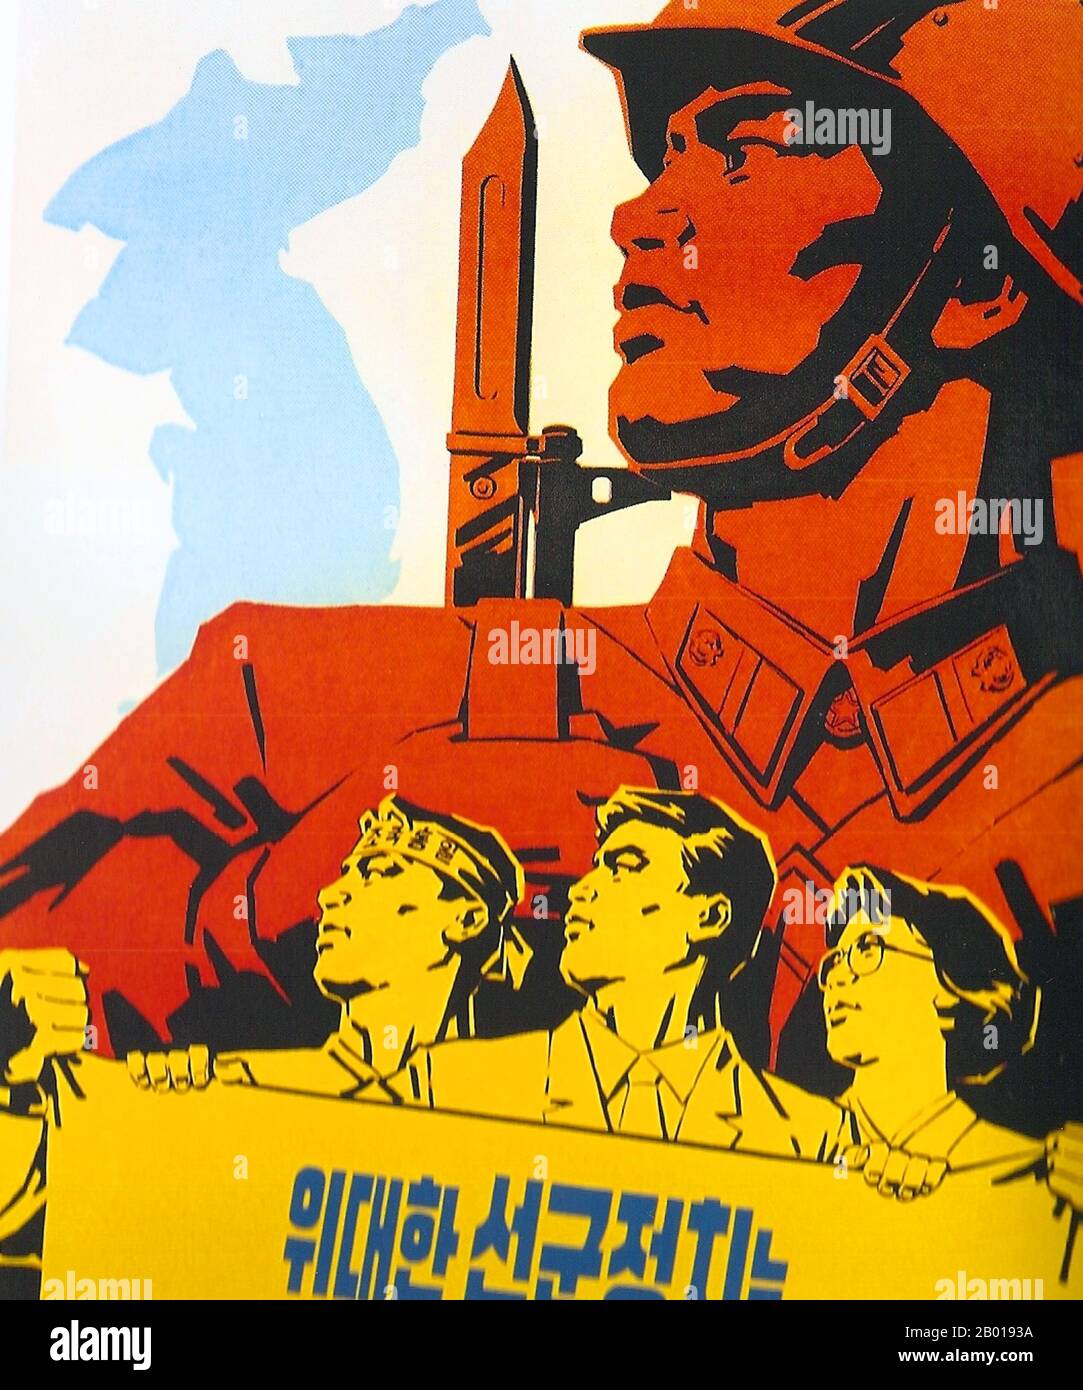 Corea: Poster propagandistico della Corea del Nord (DPRK) che glorifica le forze armate della Corea del Nord, c.. 1950s. Il realismo socialista è uno stile di arte realistica che si è sviluppato sotto il socialismo nell'Unione Sovietica e che è diventato uno stile dominante in altri paesi comunisti. Il realismo socialista è uno stile teleologicamente orientato, che ha come scopo il perseguimento degli obiettivi del socialismo e del comunismo. Anche se collegato, non dovrebbe essere confuso con realismo sociale, un tipo di arte che realisticamente raffigura soggetti di interesse sociale. Il realismo socialista generalmente glorifica l'ideologia dello Stato comunista. Foto Stock